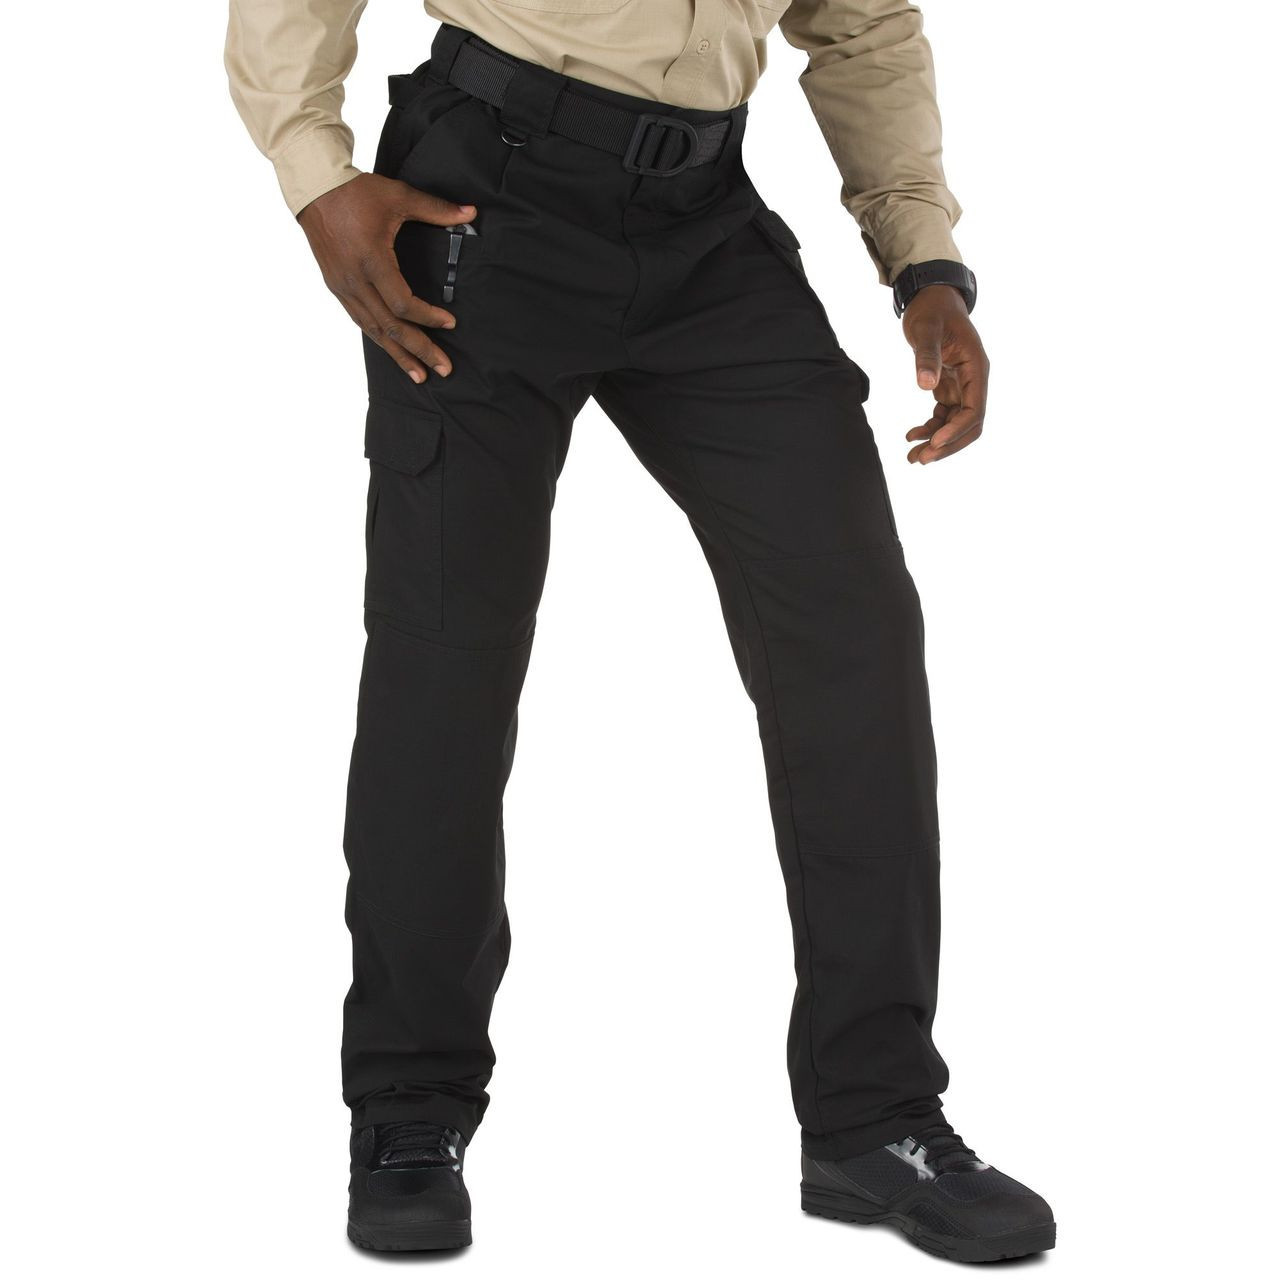 5.11 Tactical Pant - Cotton - sizes 46+